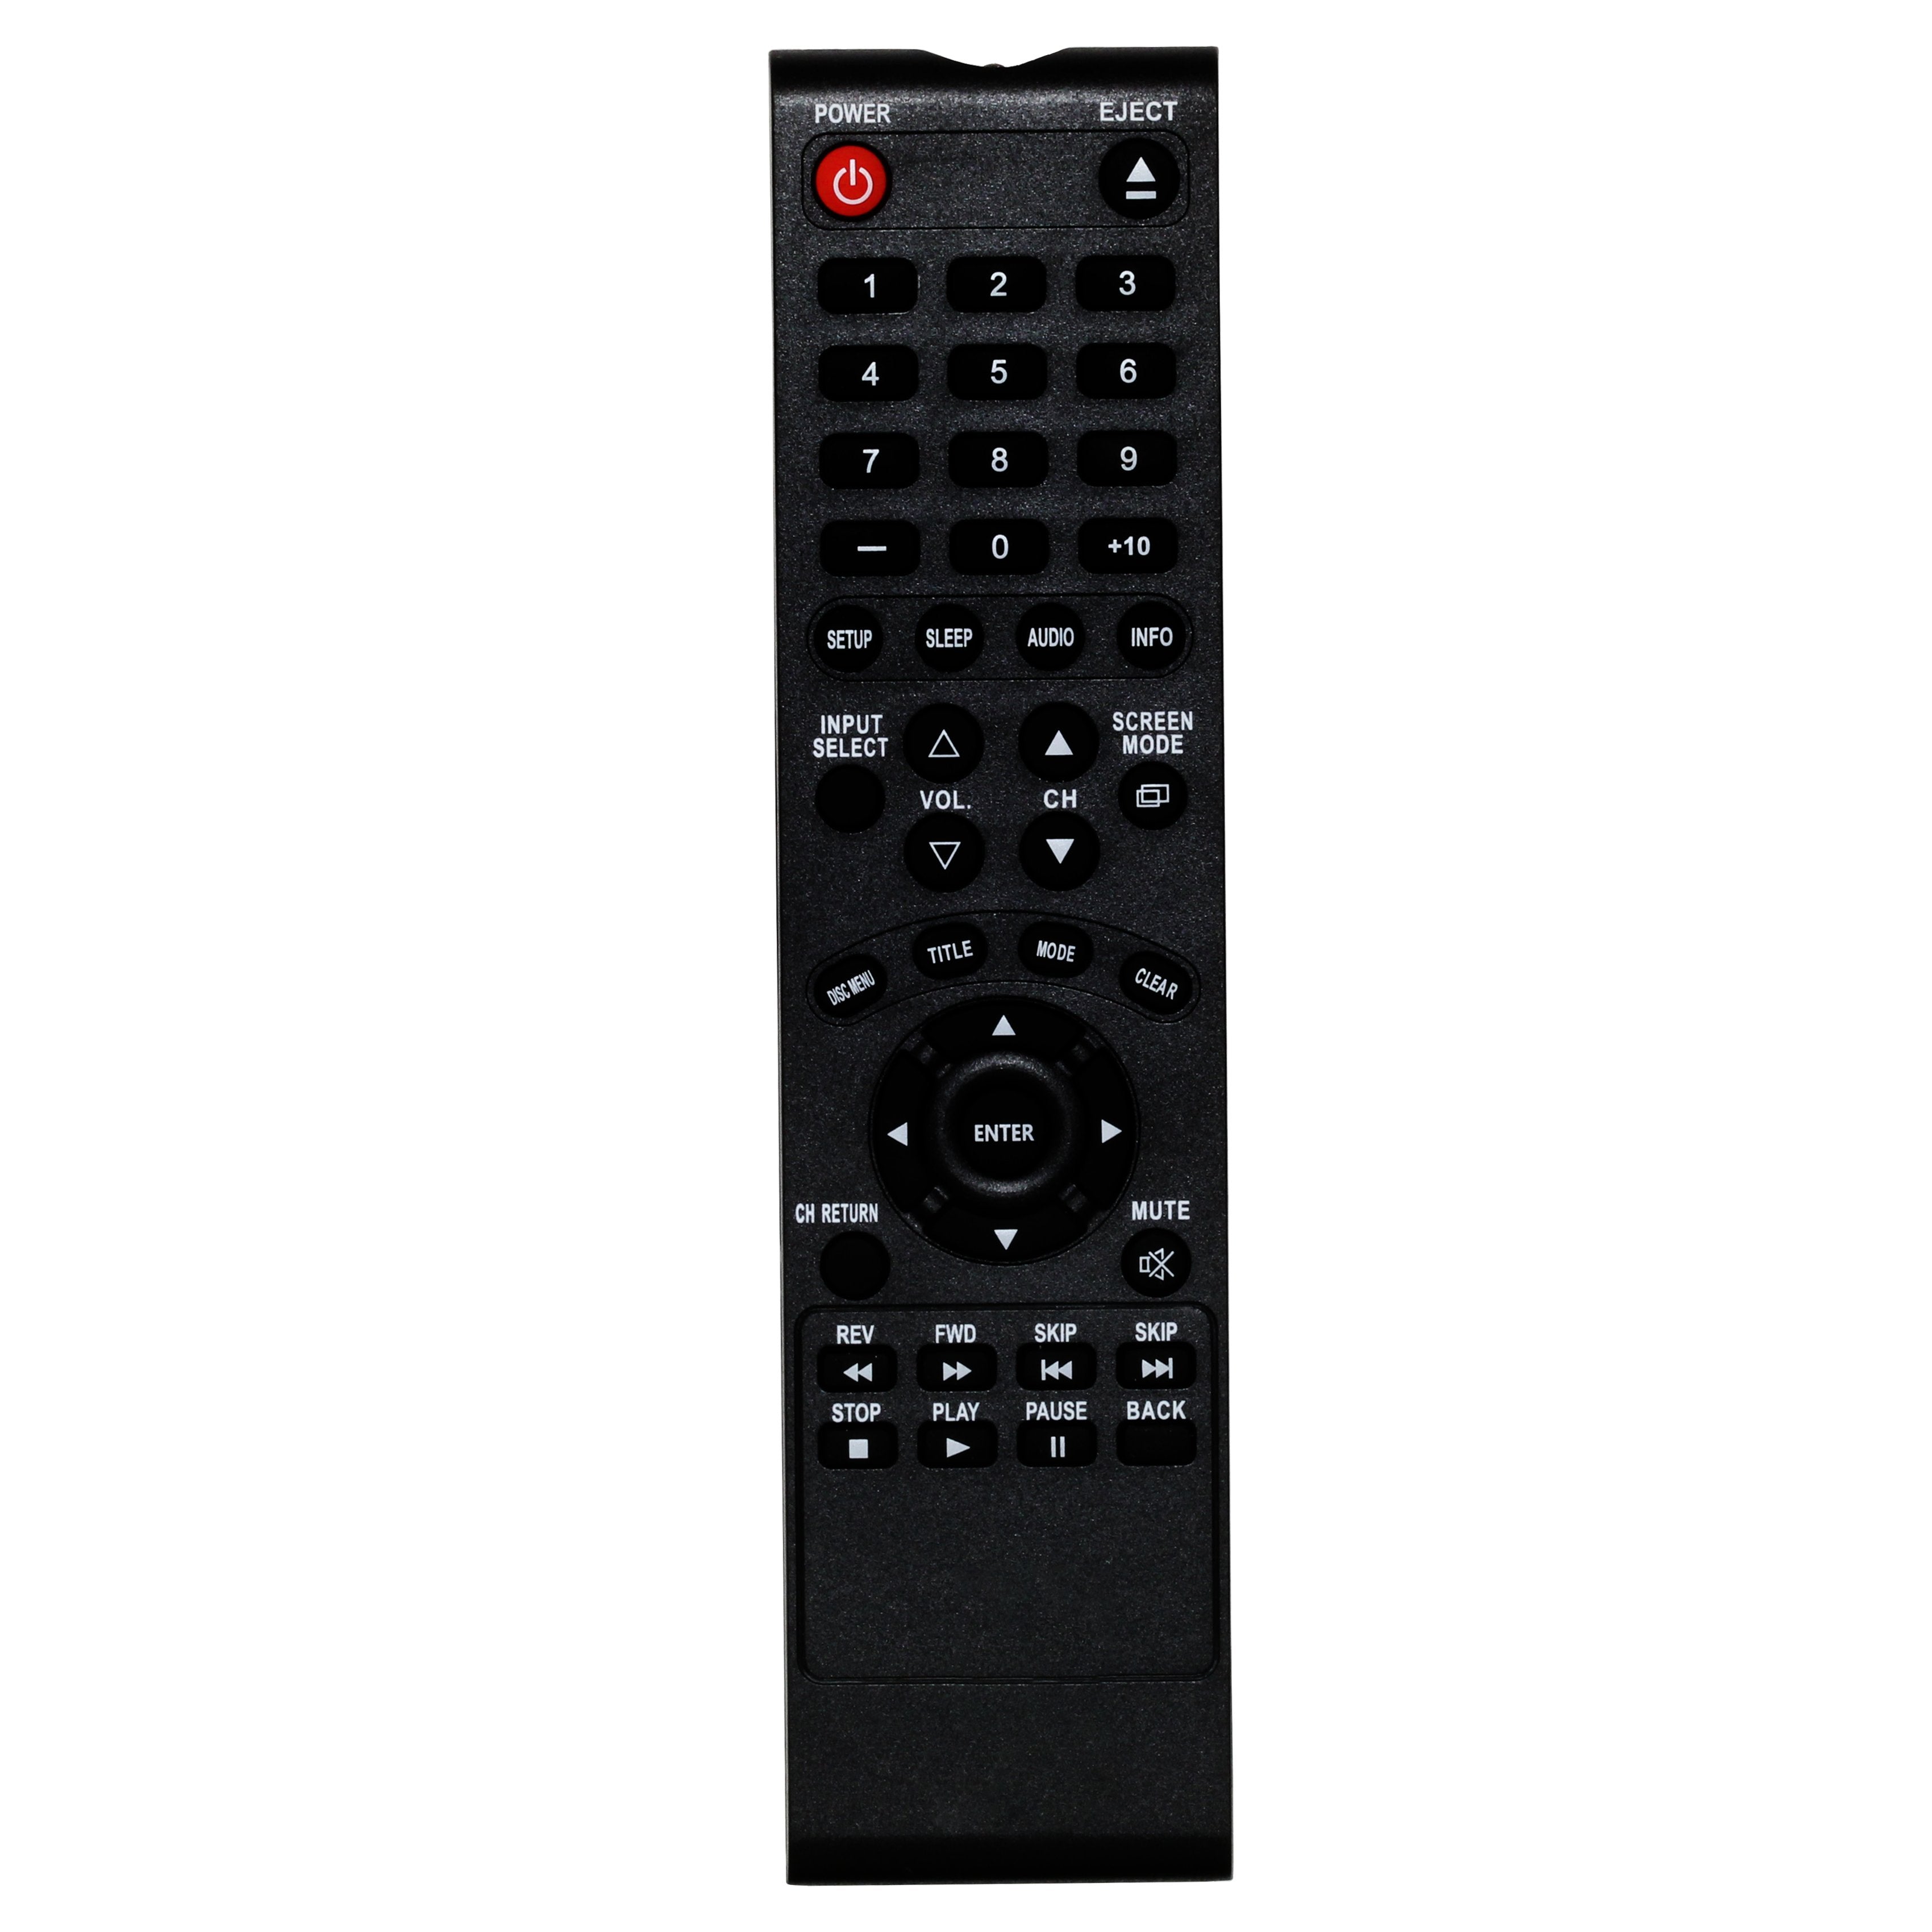 Sylvania RPK712AK06  TV Remote